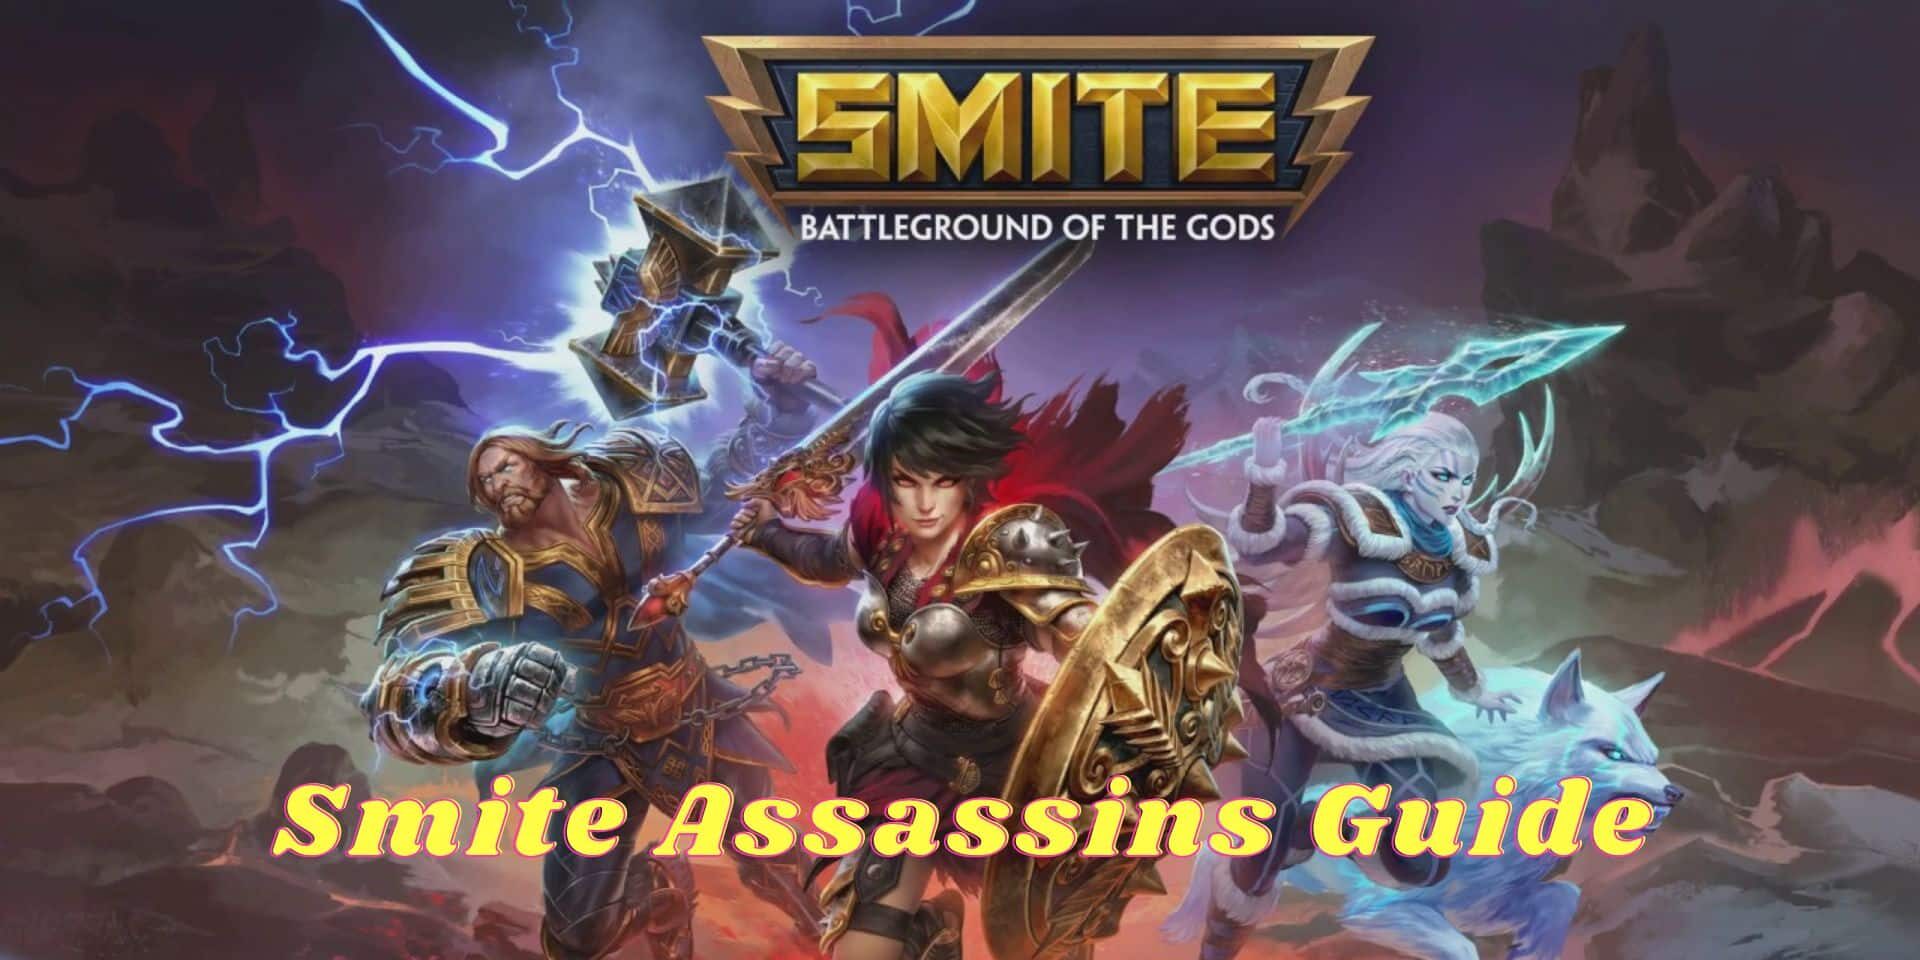 Smite Assassins Guide aspect ratio 2 1